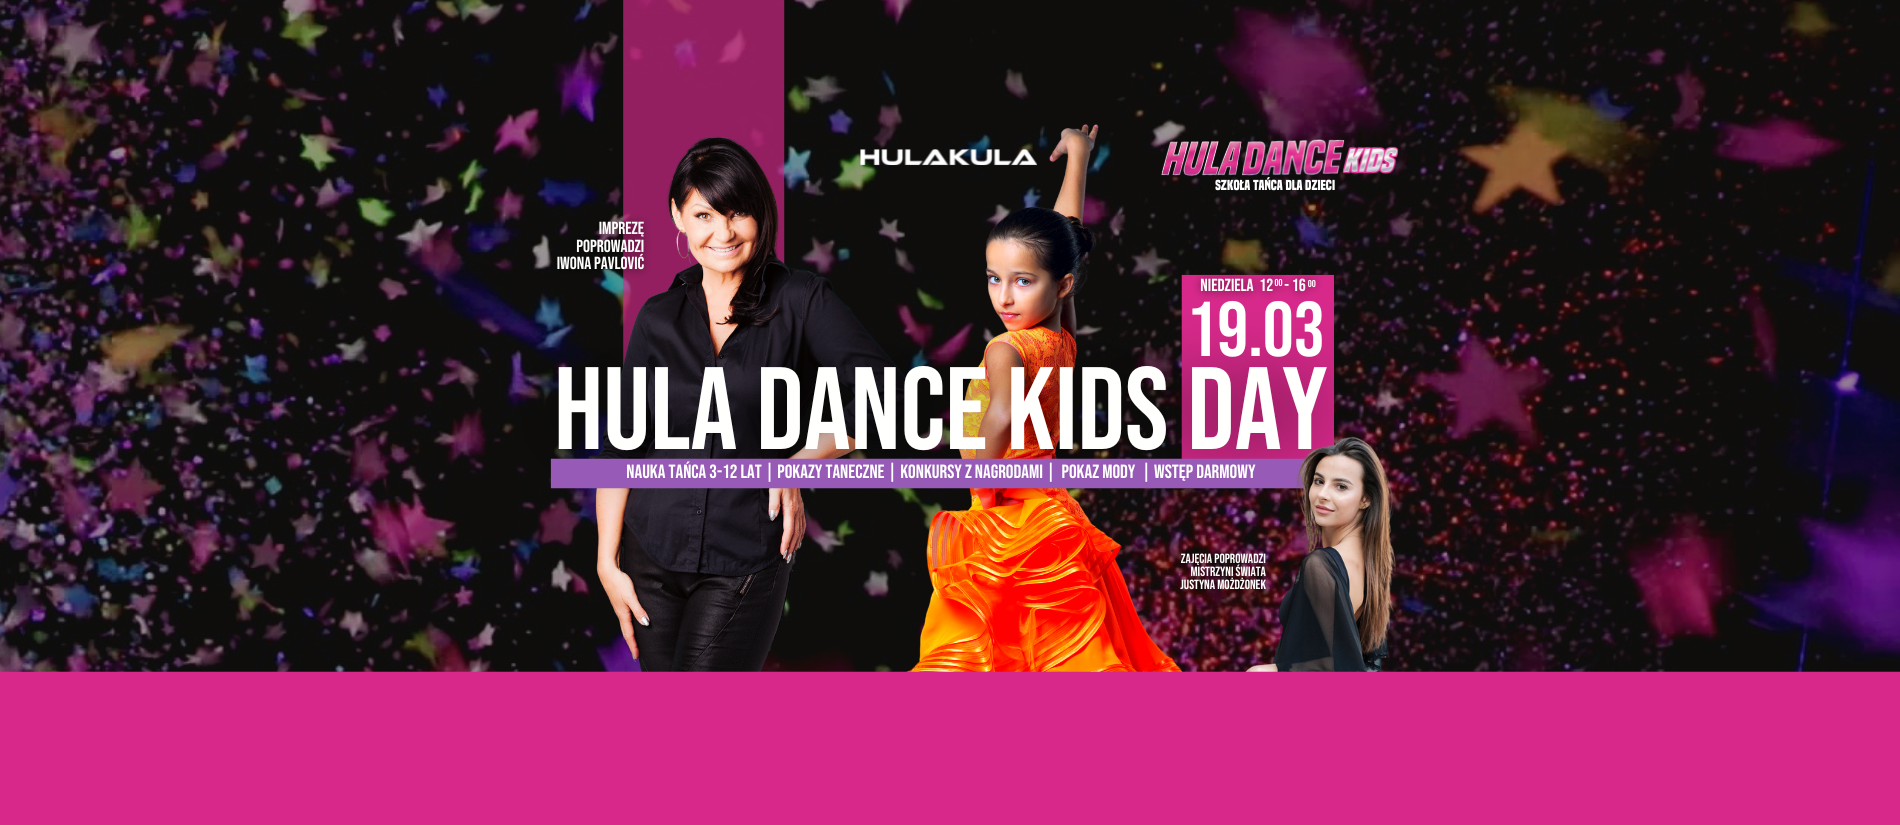 Hula Dance Kids Day - impreza dla dzieci